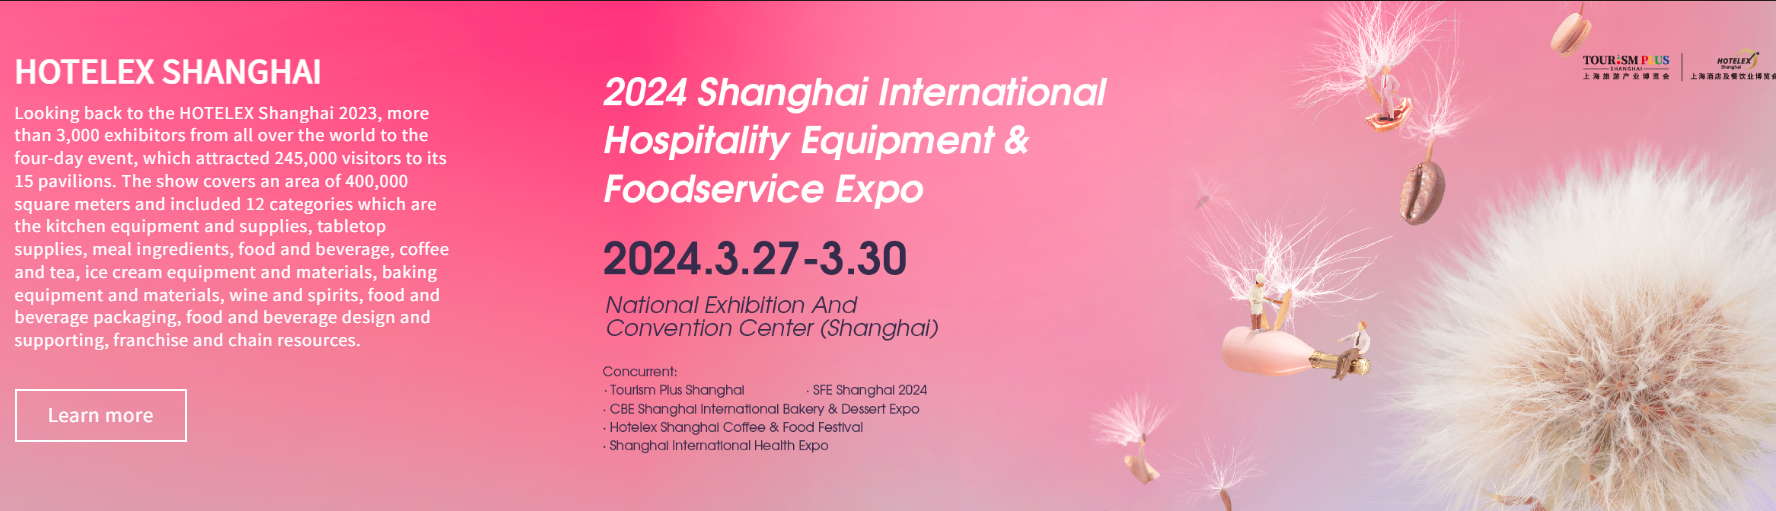 Why HOTELEX Shanghai Exhibition 2024?